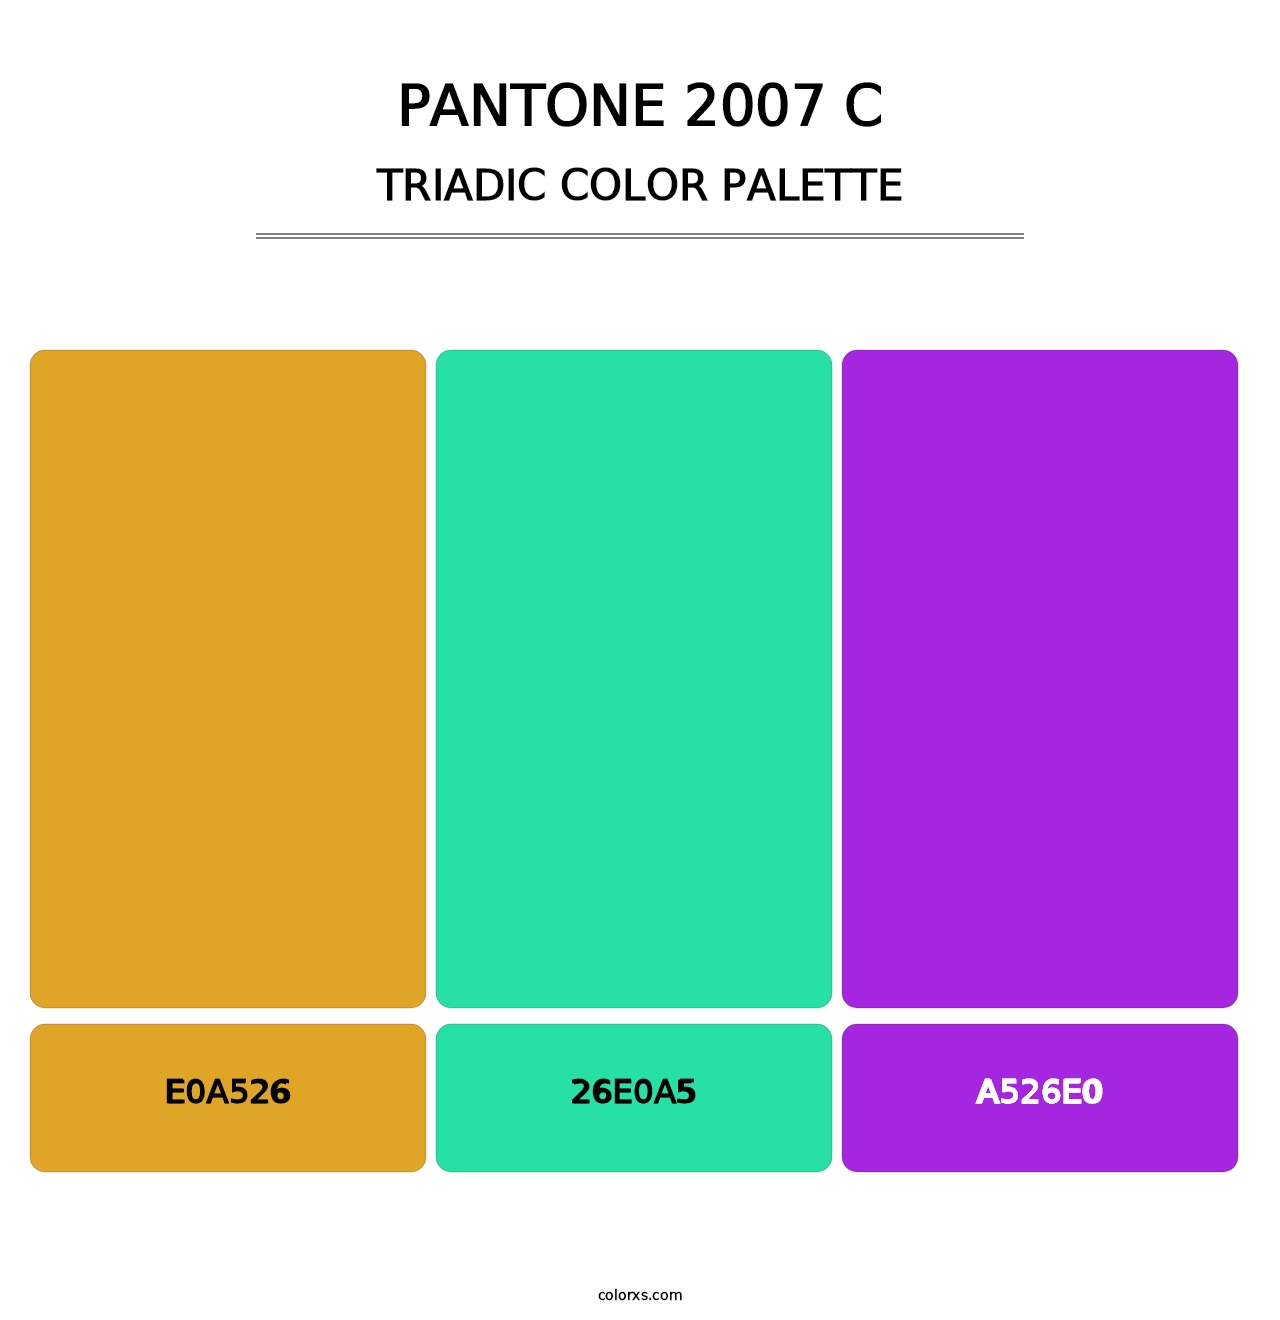 PANTONE 2007 C - Triadic Color Palette